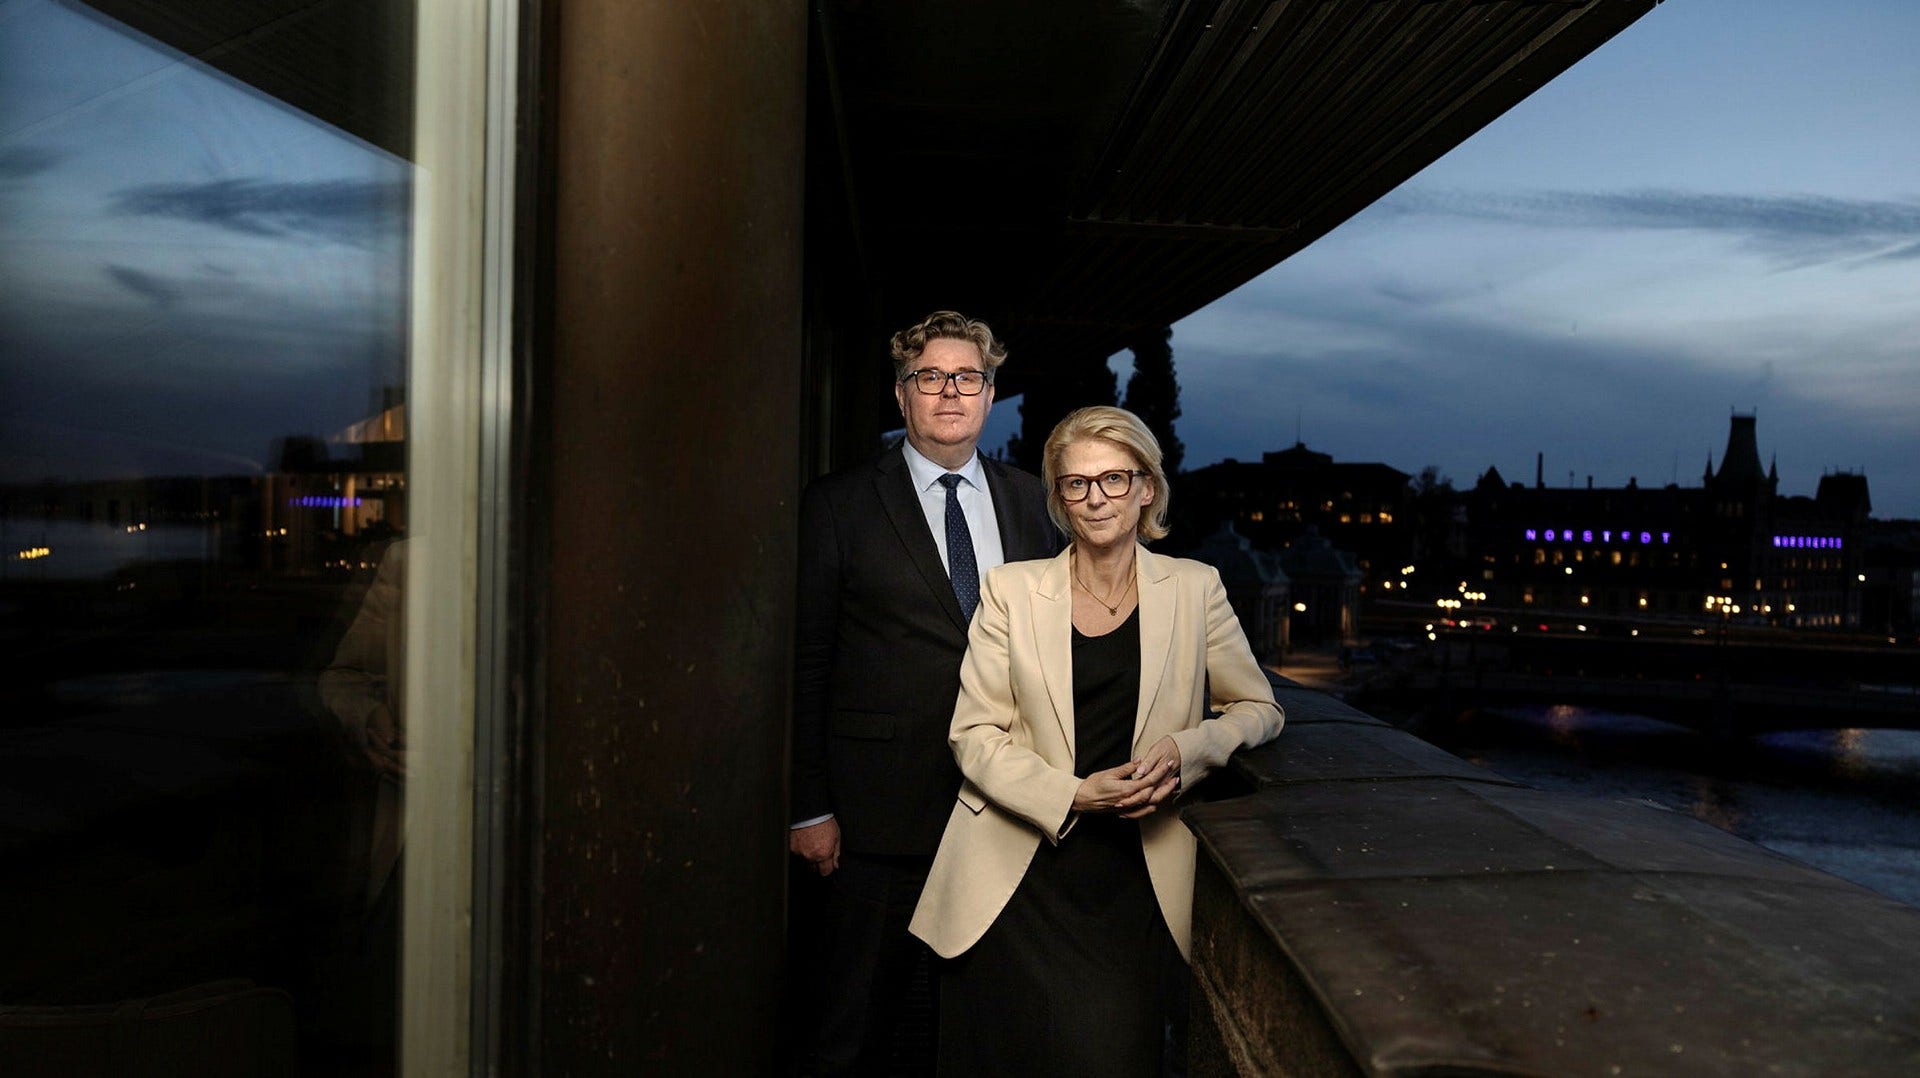 Justitieminister Gunnar Strömmer (M) och finansminister Elisabeth Svantesson (M) vill ta krafttag mot den kriminella ekonomin och beröva gängen på deras inkomster. De är hoppfulla om att det går att vända utvecklingen.